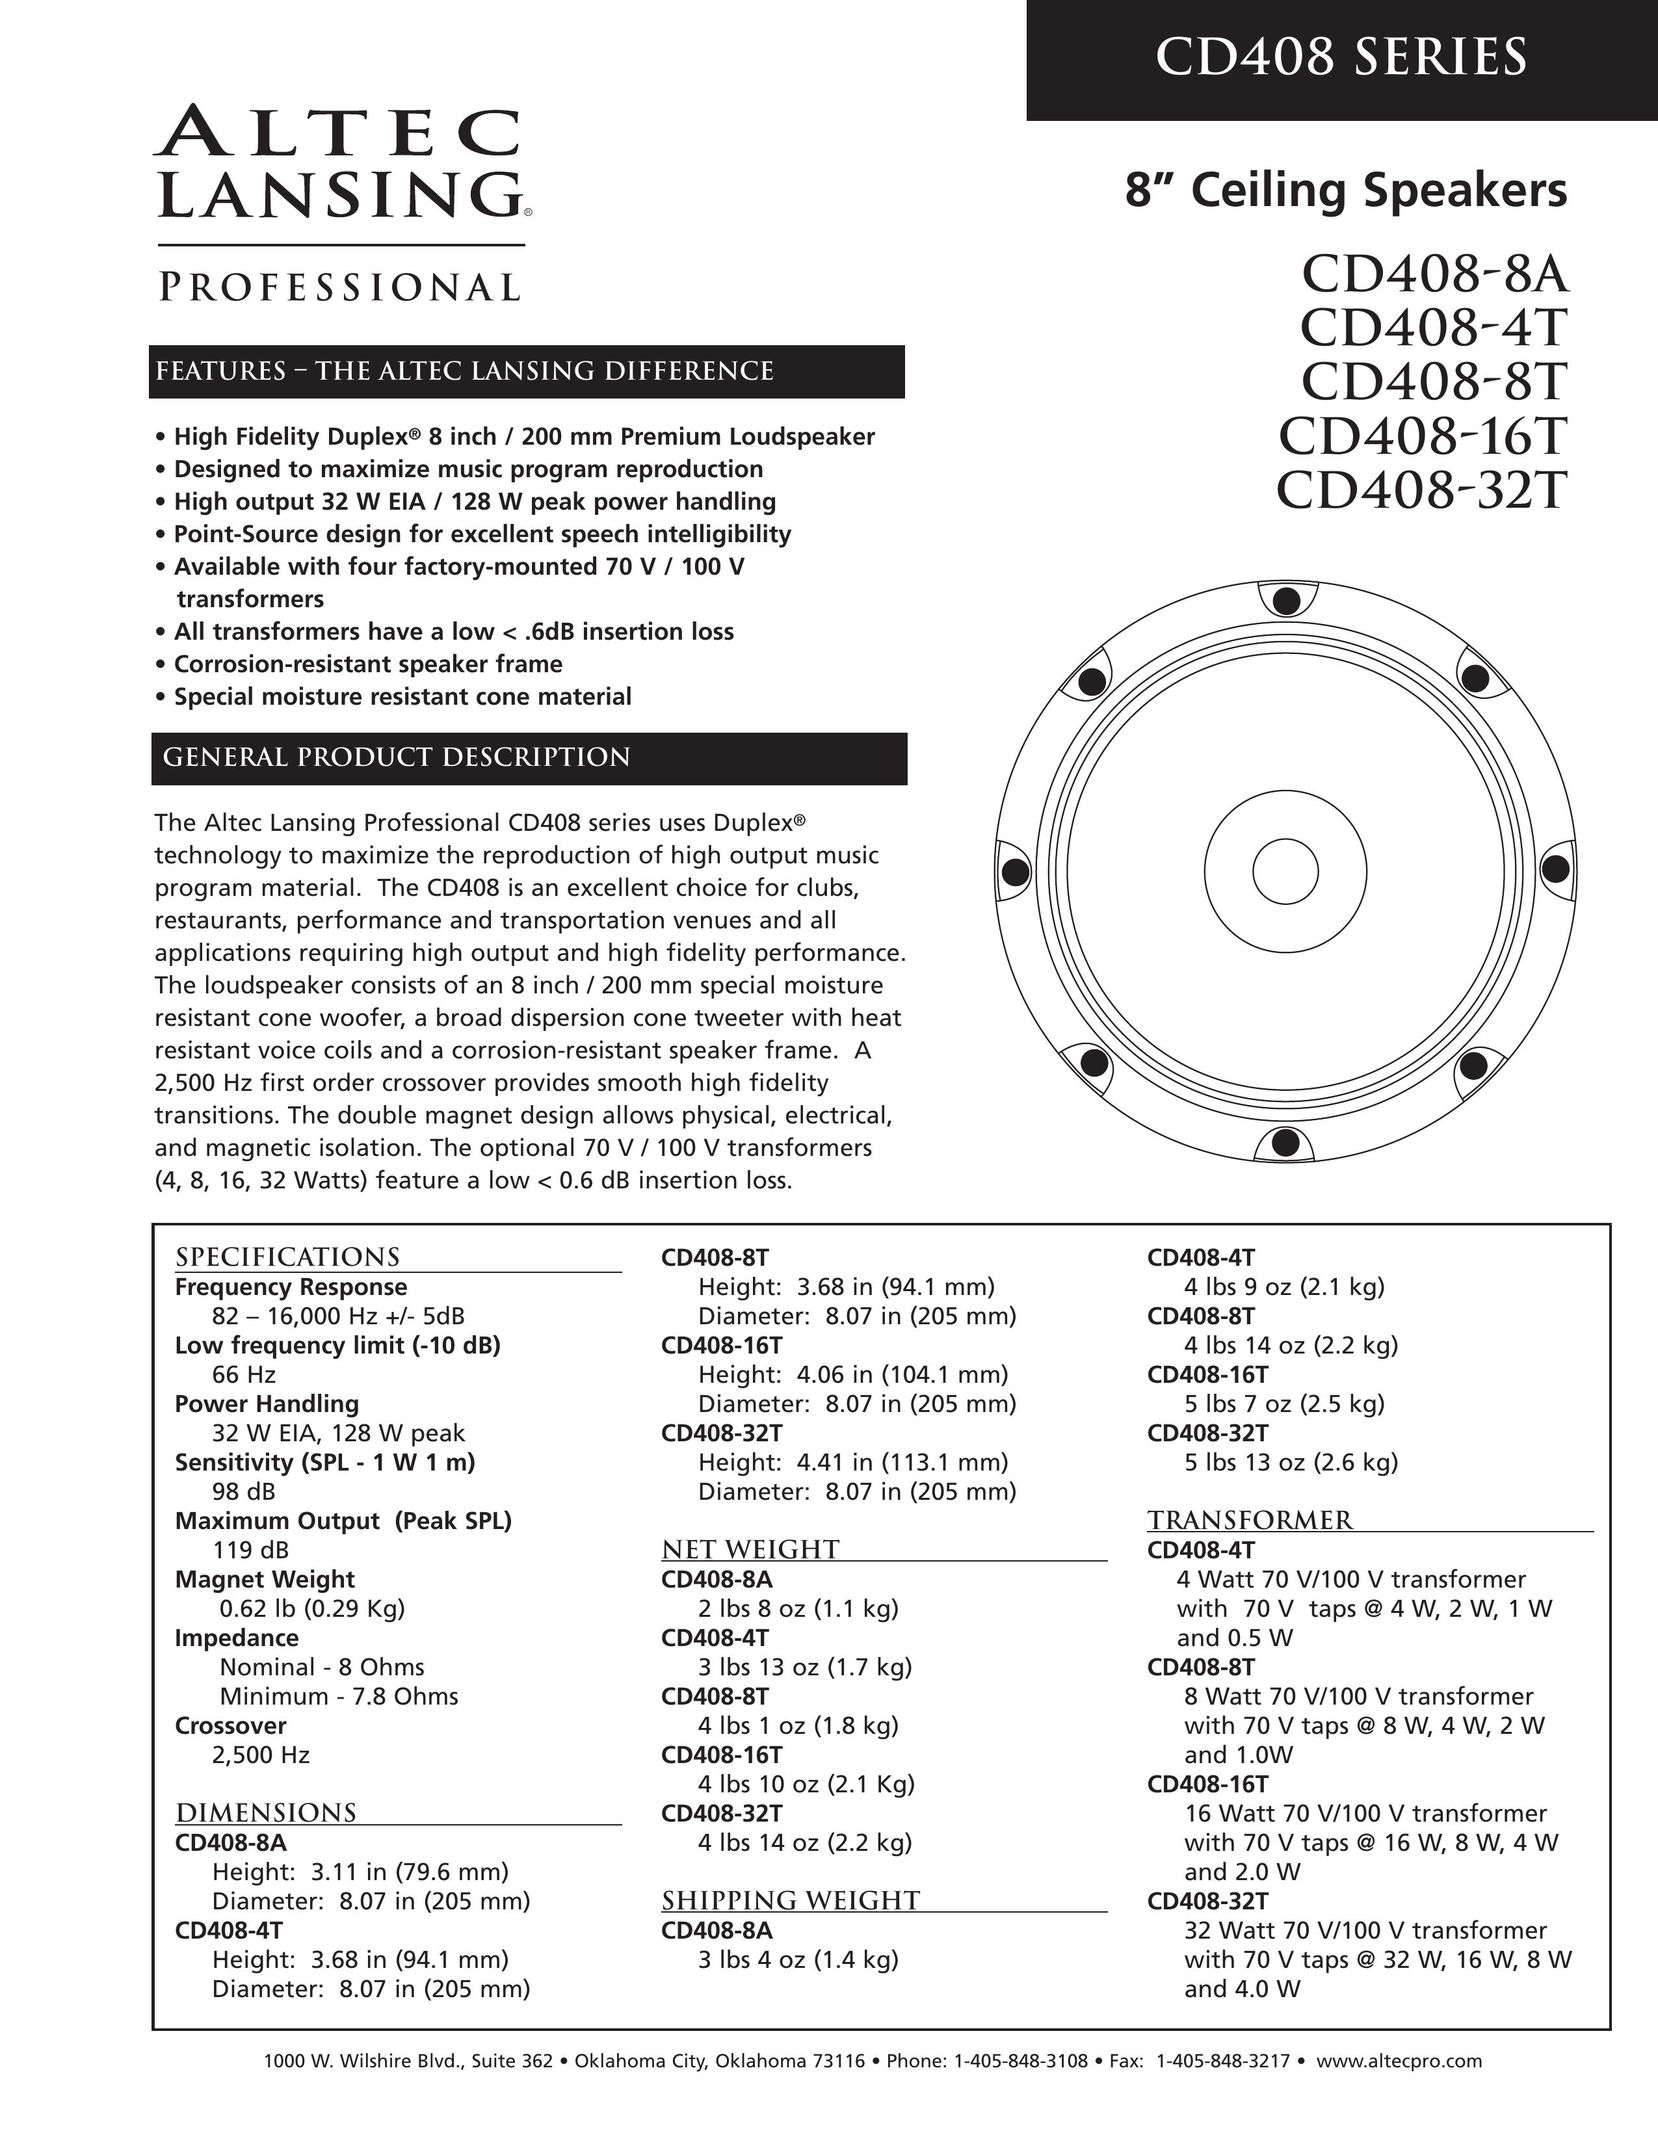 Altec Lansing CD408-8A Speaker User Manual